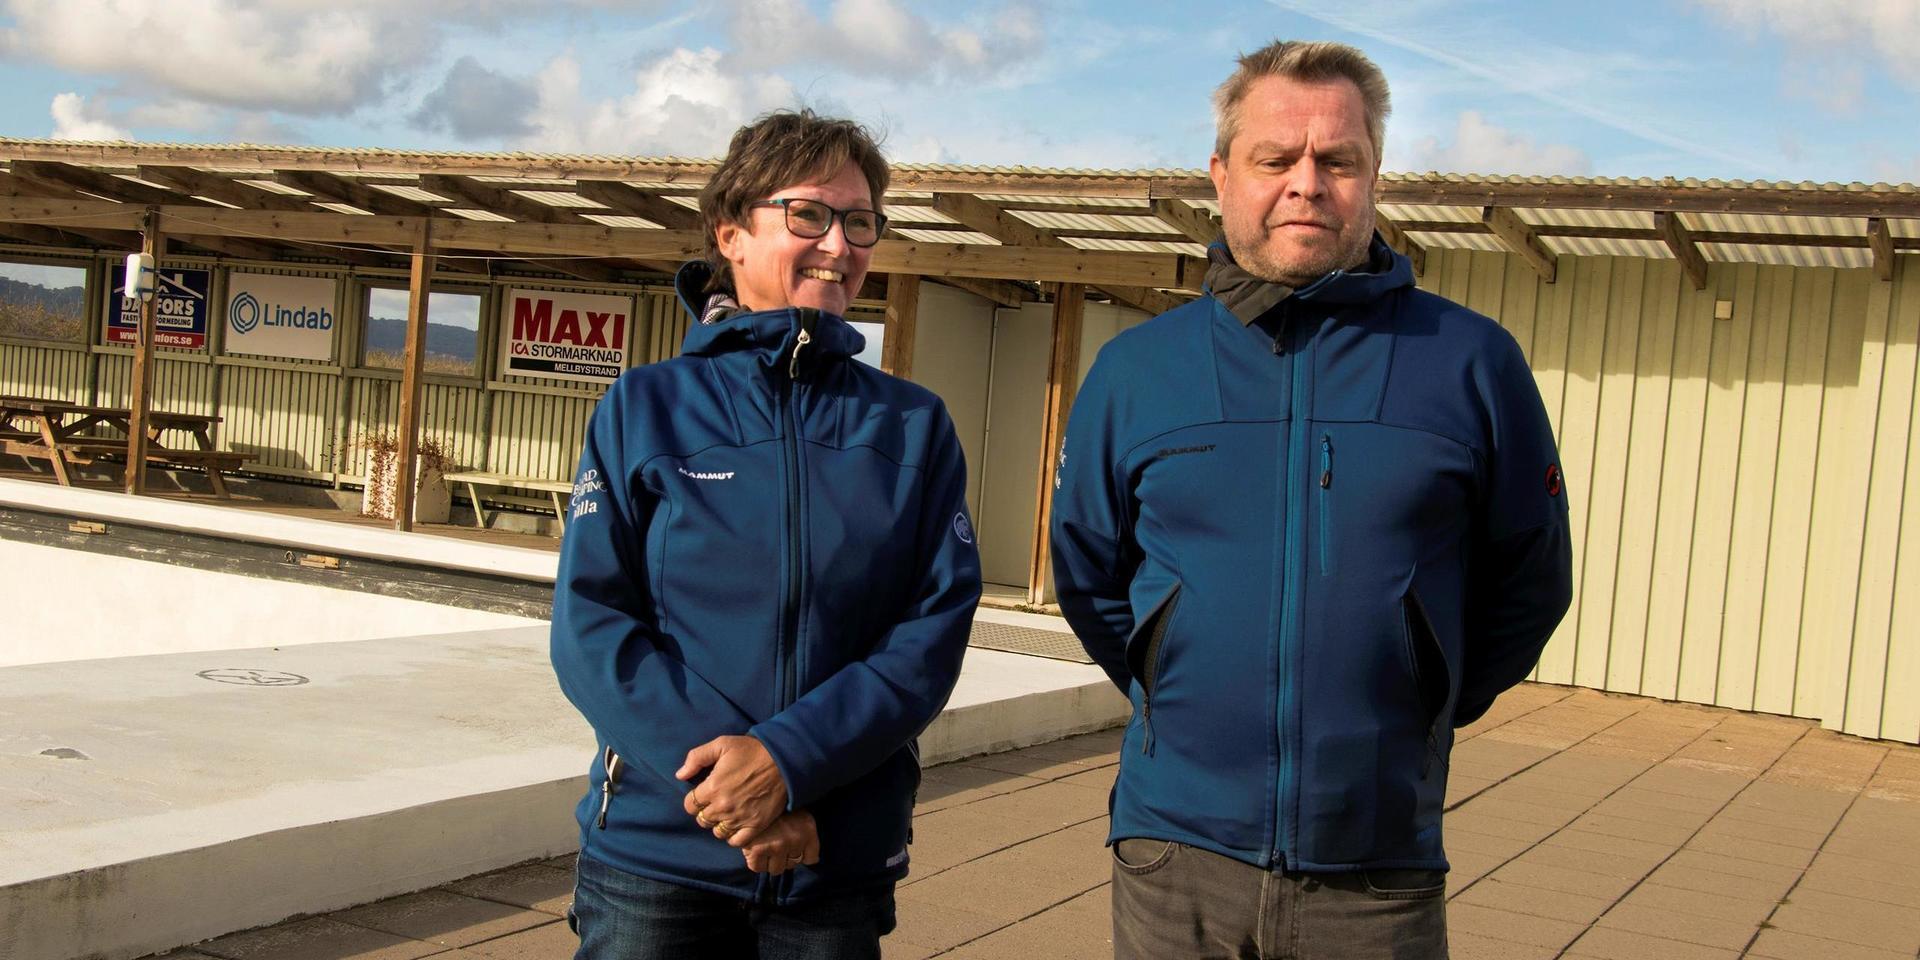 Micke och Nilla Mathiasson driver Båstad camping sedan 2013. De har nu kommit till en punkt där de känner sig nöjda utvecklingen av campingen och vill ta sig an och utveckla något nytt. 